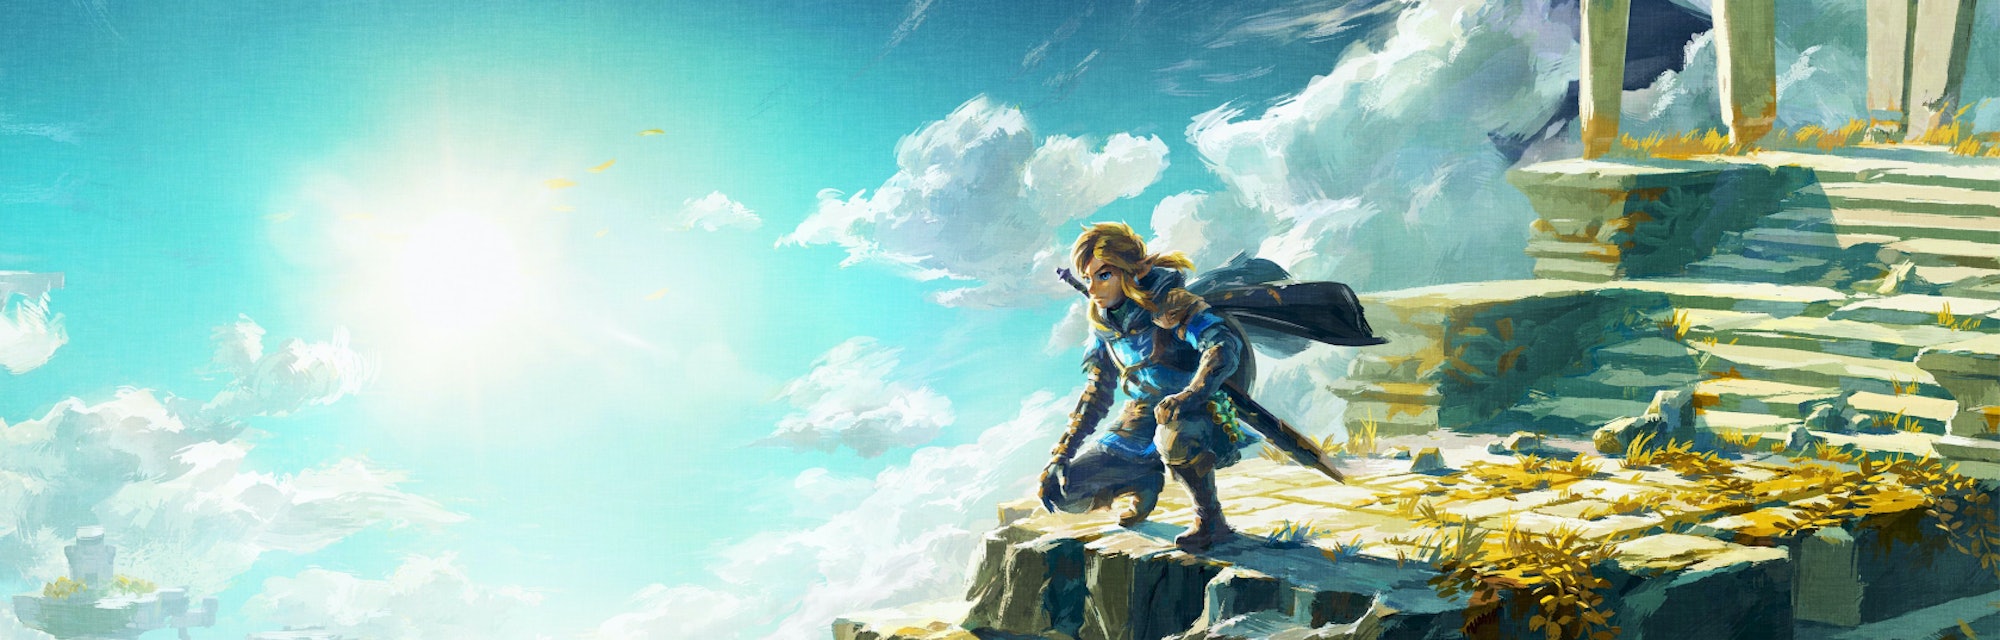 Zelda: Tears of the Kingdom' trailer hints at Hyrule's grim secrets